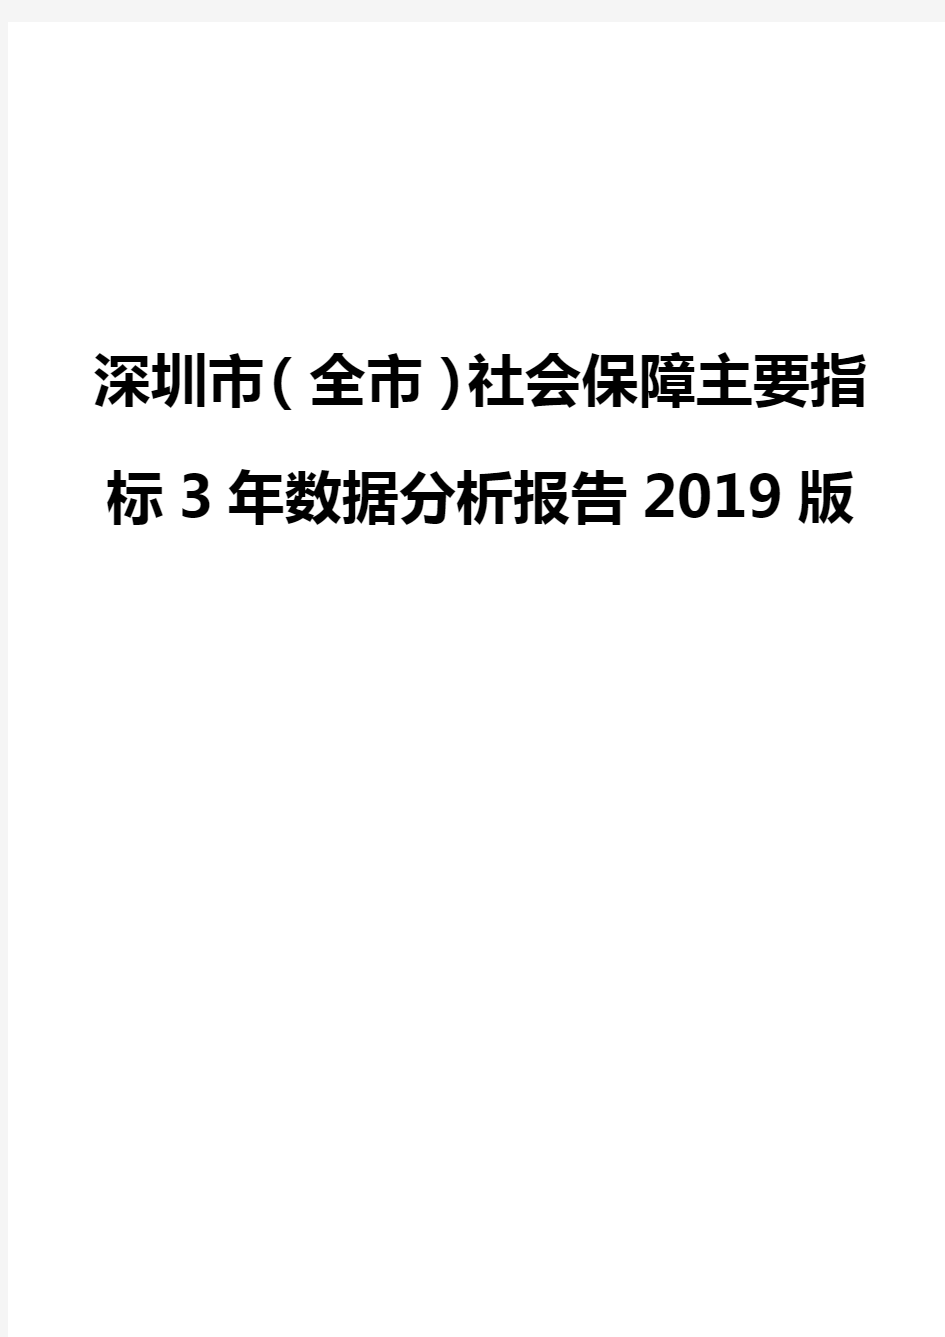 深圳市(全市)社会保障主要指标3年数据分析报告2019版